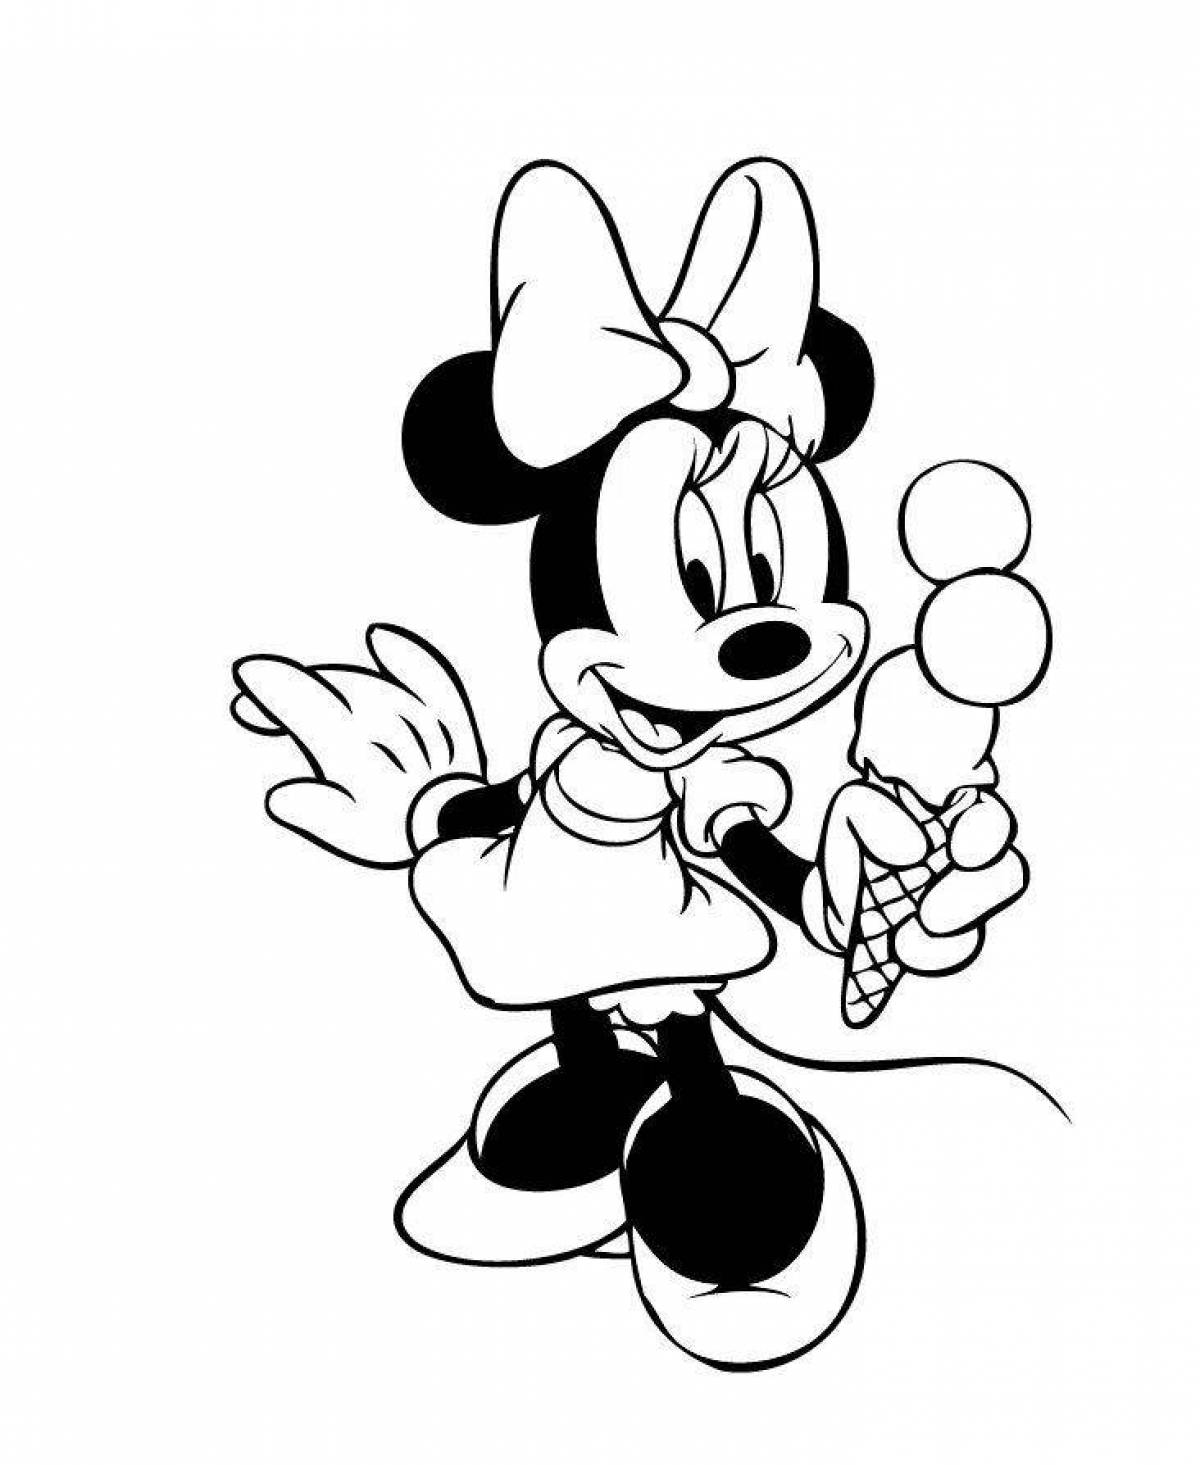 Раскраски героев диснеевских мультиков: Микки Маус (Mickey Mouse) скачать